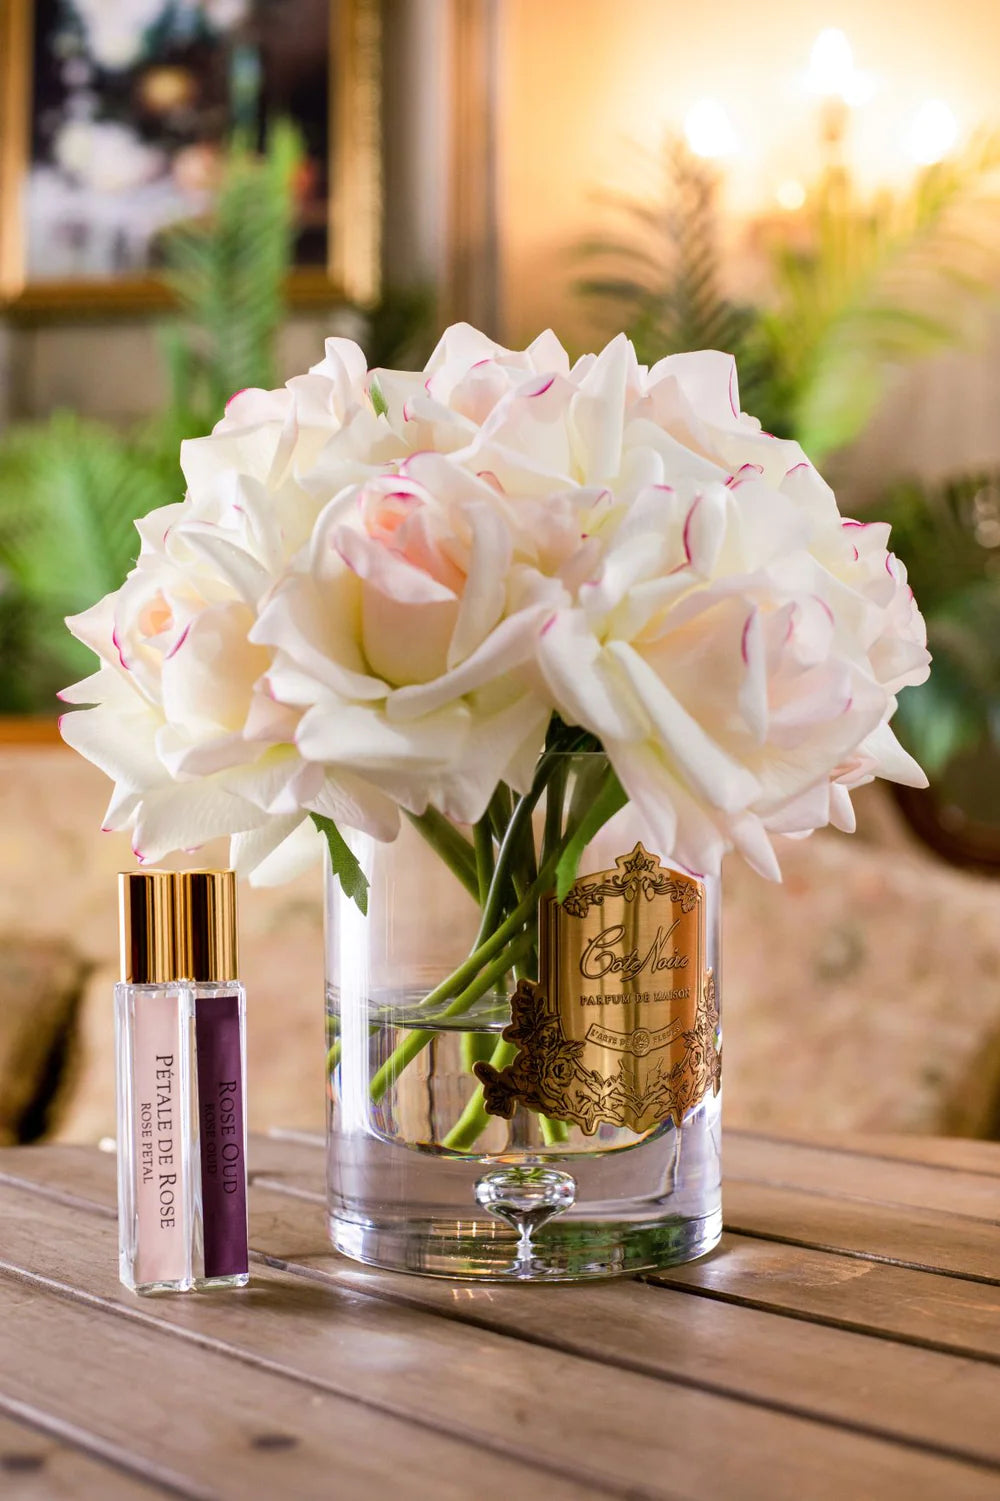 luxury grand bouquet duftblume mit weiss und rosa rosen zwei parfumsprays und zwei parfumsprays auf einem holztisch.